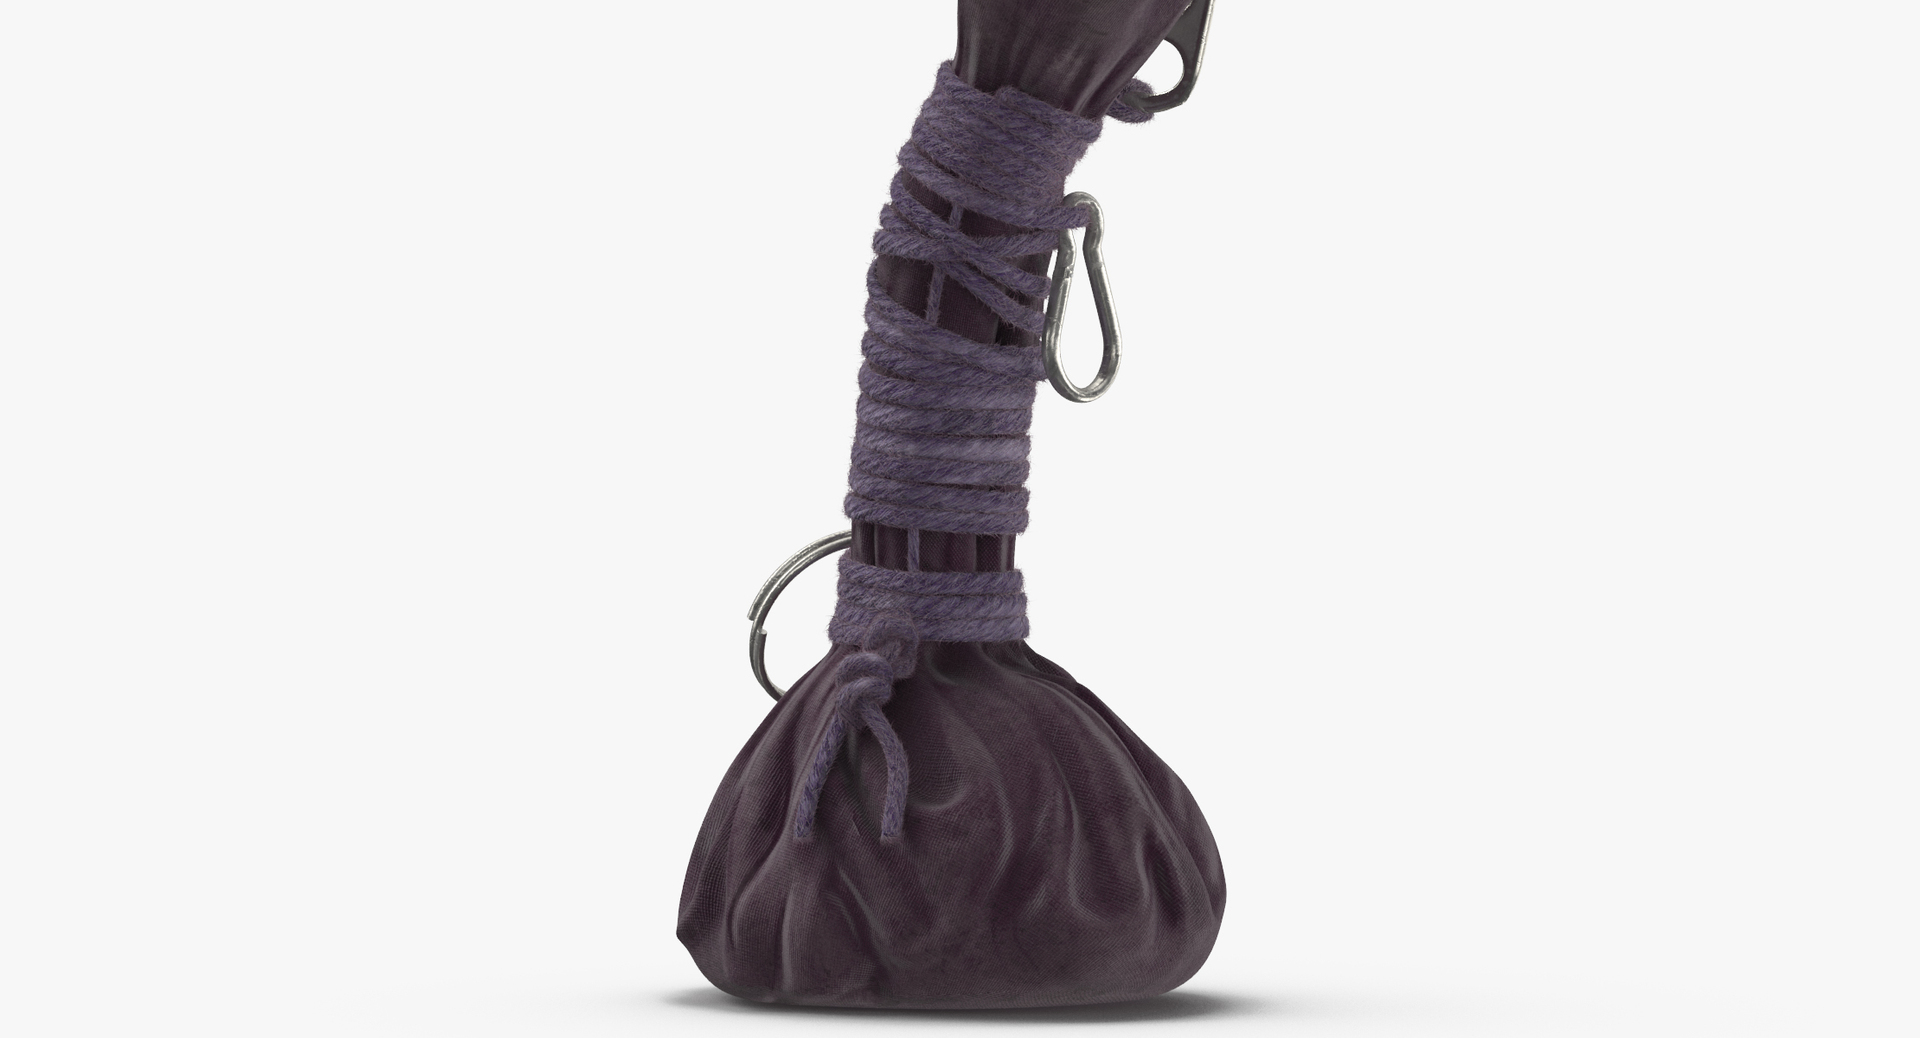 Voodoo gris-gris bags 3D model - TurboSquid 1173285